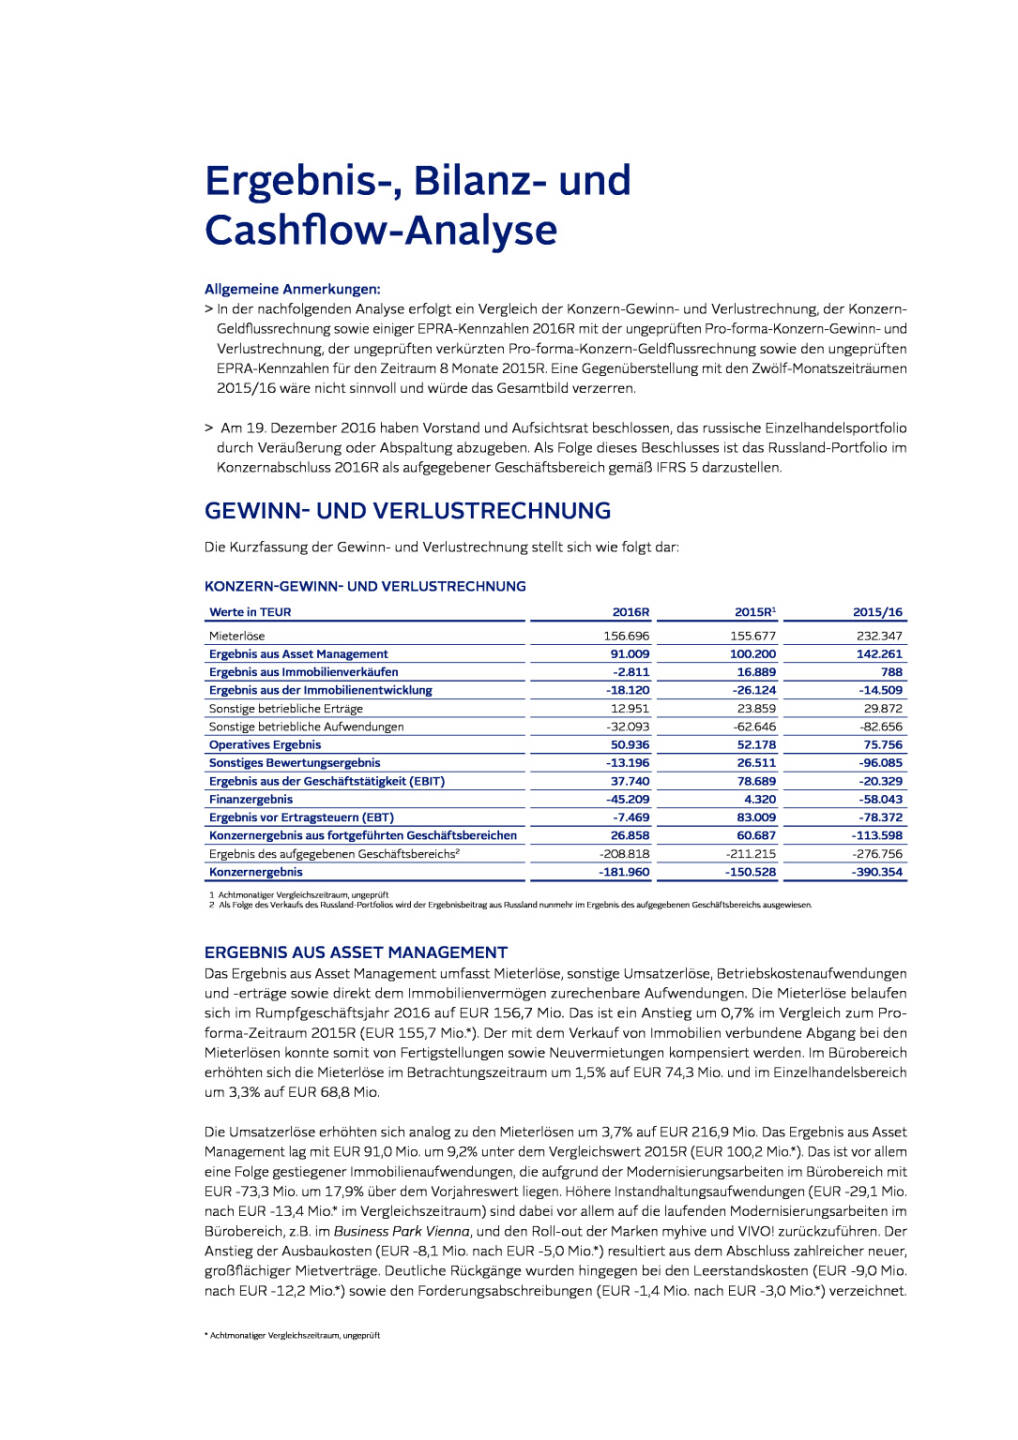 Immofinanz: Ergebnis-, Bilanz- und Cashflow-Analyse, Seite 1/6, komplettes Dokument unter http://boerse-social.com/static/uploads/file_2199_immofinanz_ergebnis-_bilanz-_und_cashflow-analyse.pdf